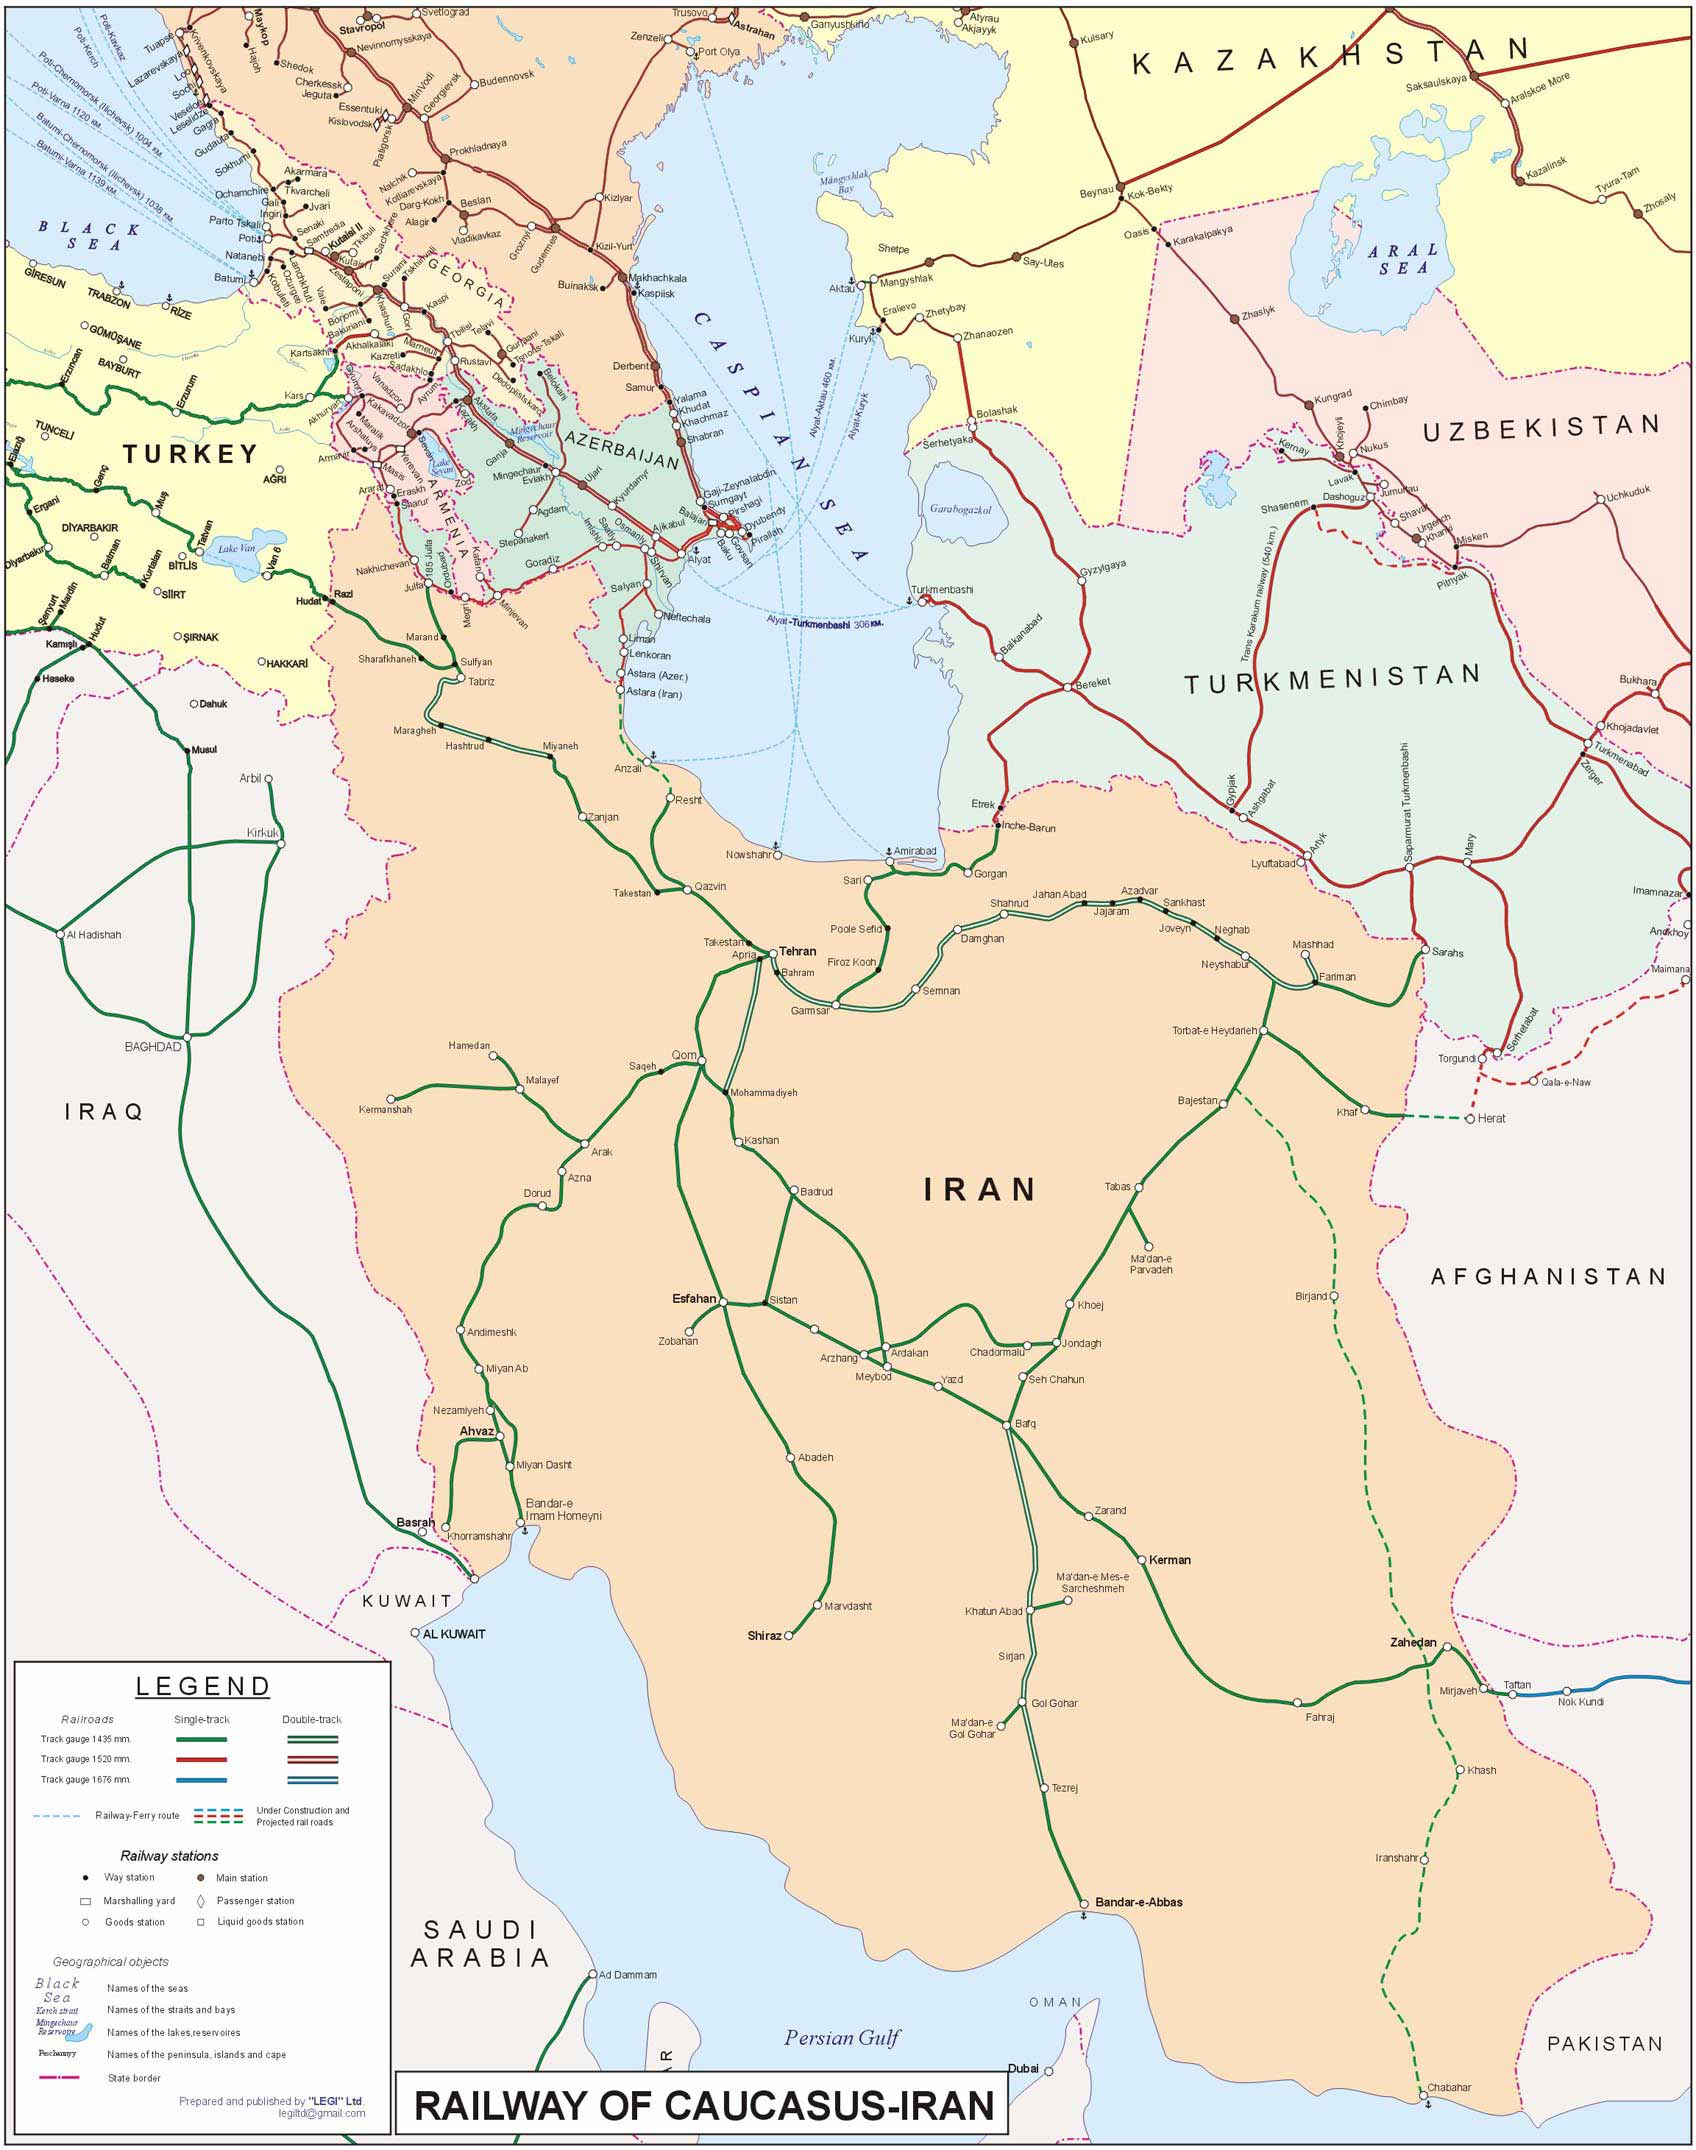 ირანისა და კავკასიის რეგიონის რკინიგზის  რუკა